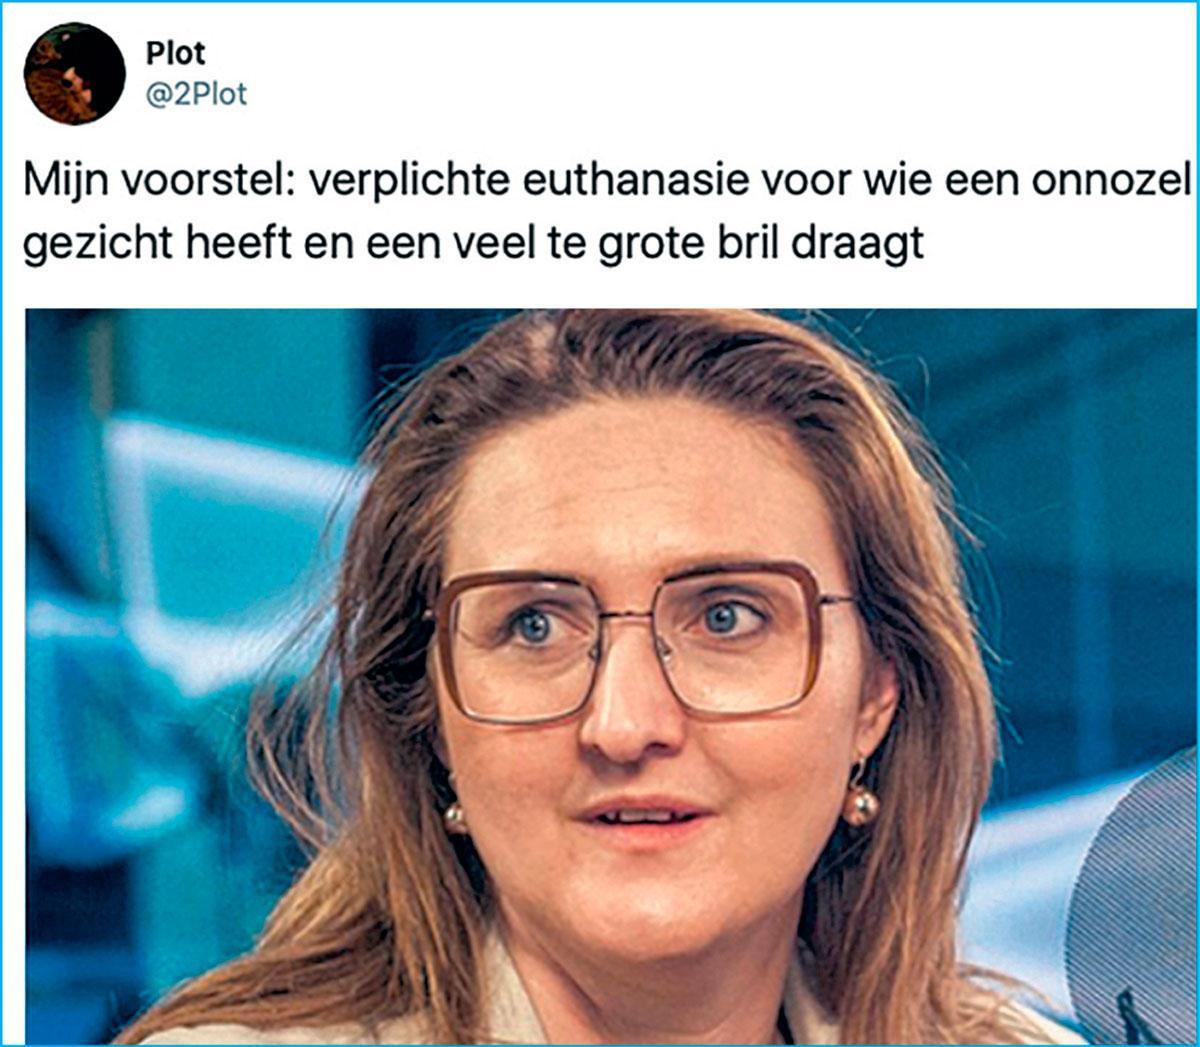 De ontmaskering van 2Plot: West-Vlaamse magistraat stuurt anoniem ranzige tweets